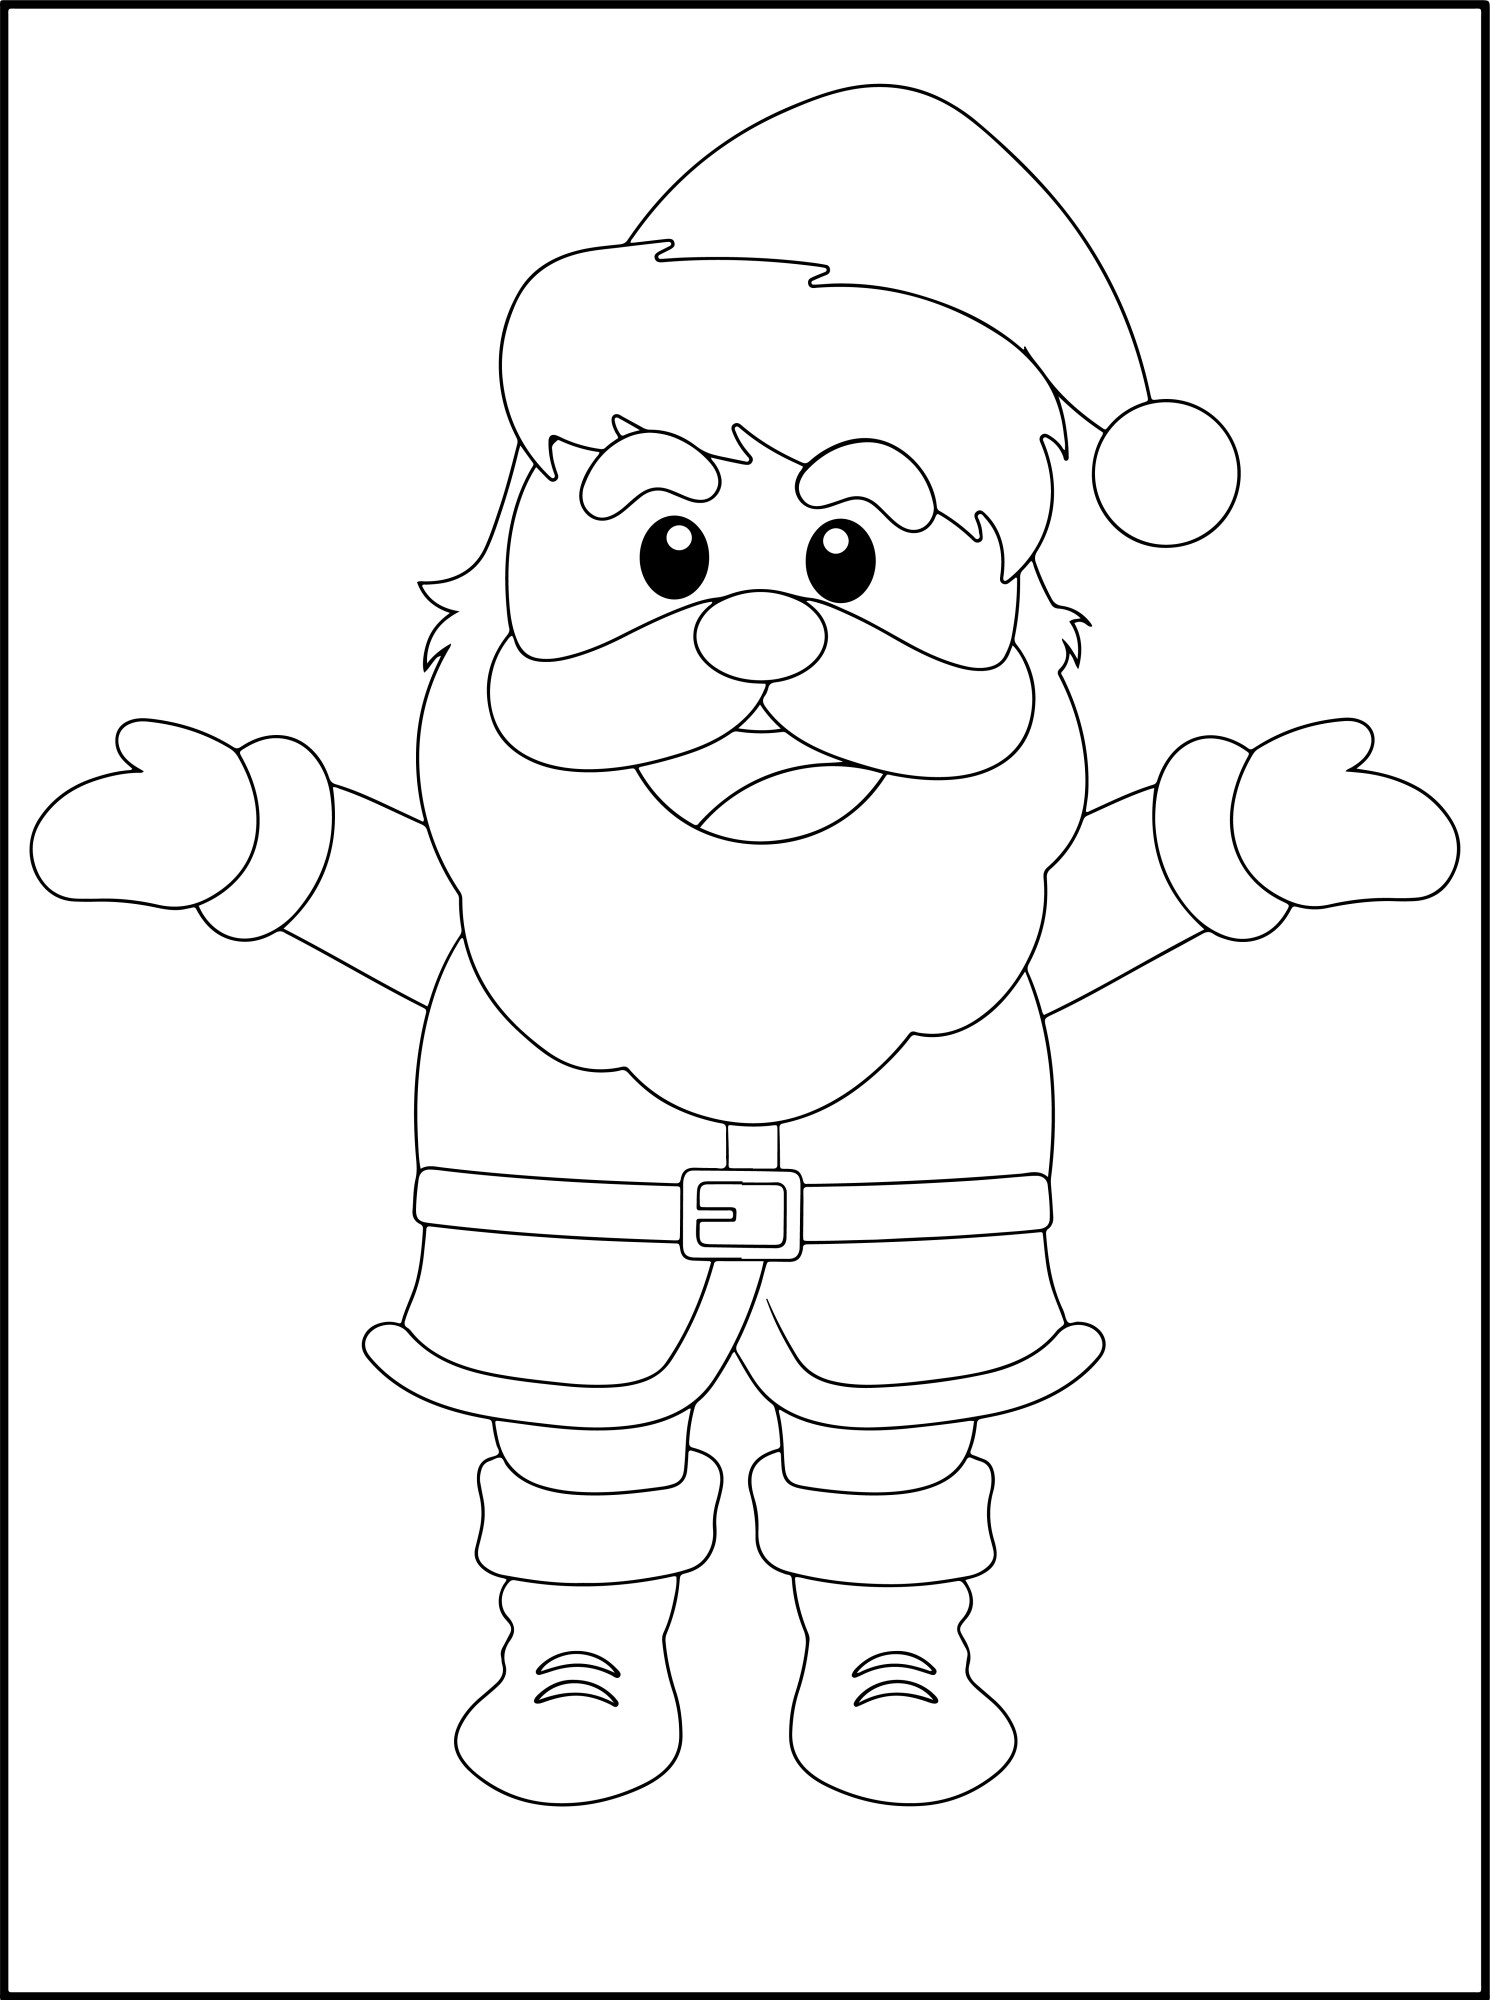 Раскраска для детей: веселый дед мороз в шапке с расставленными руками